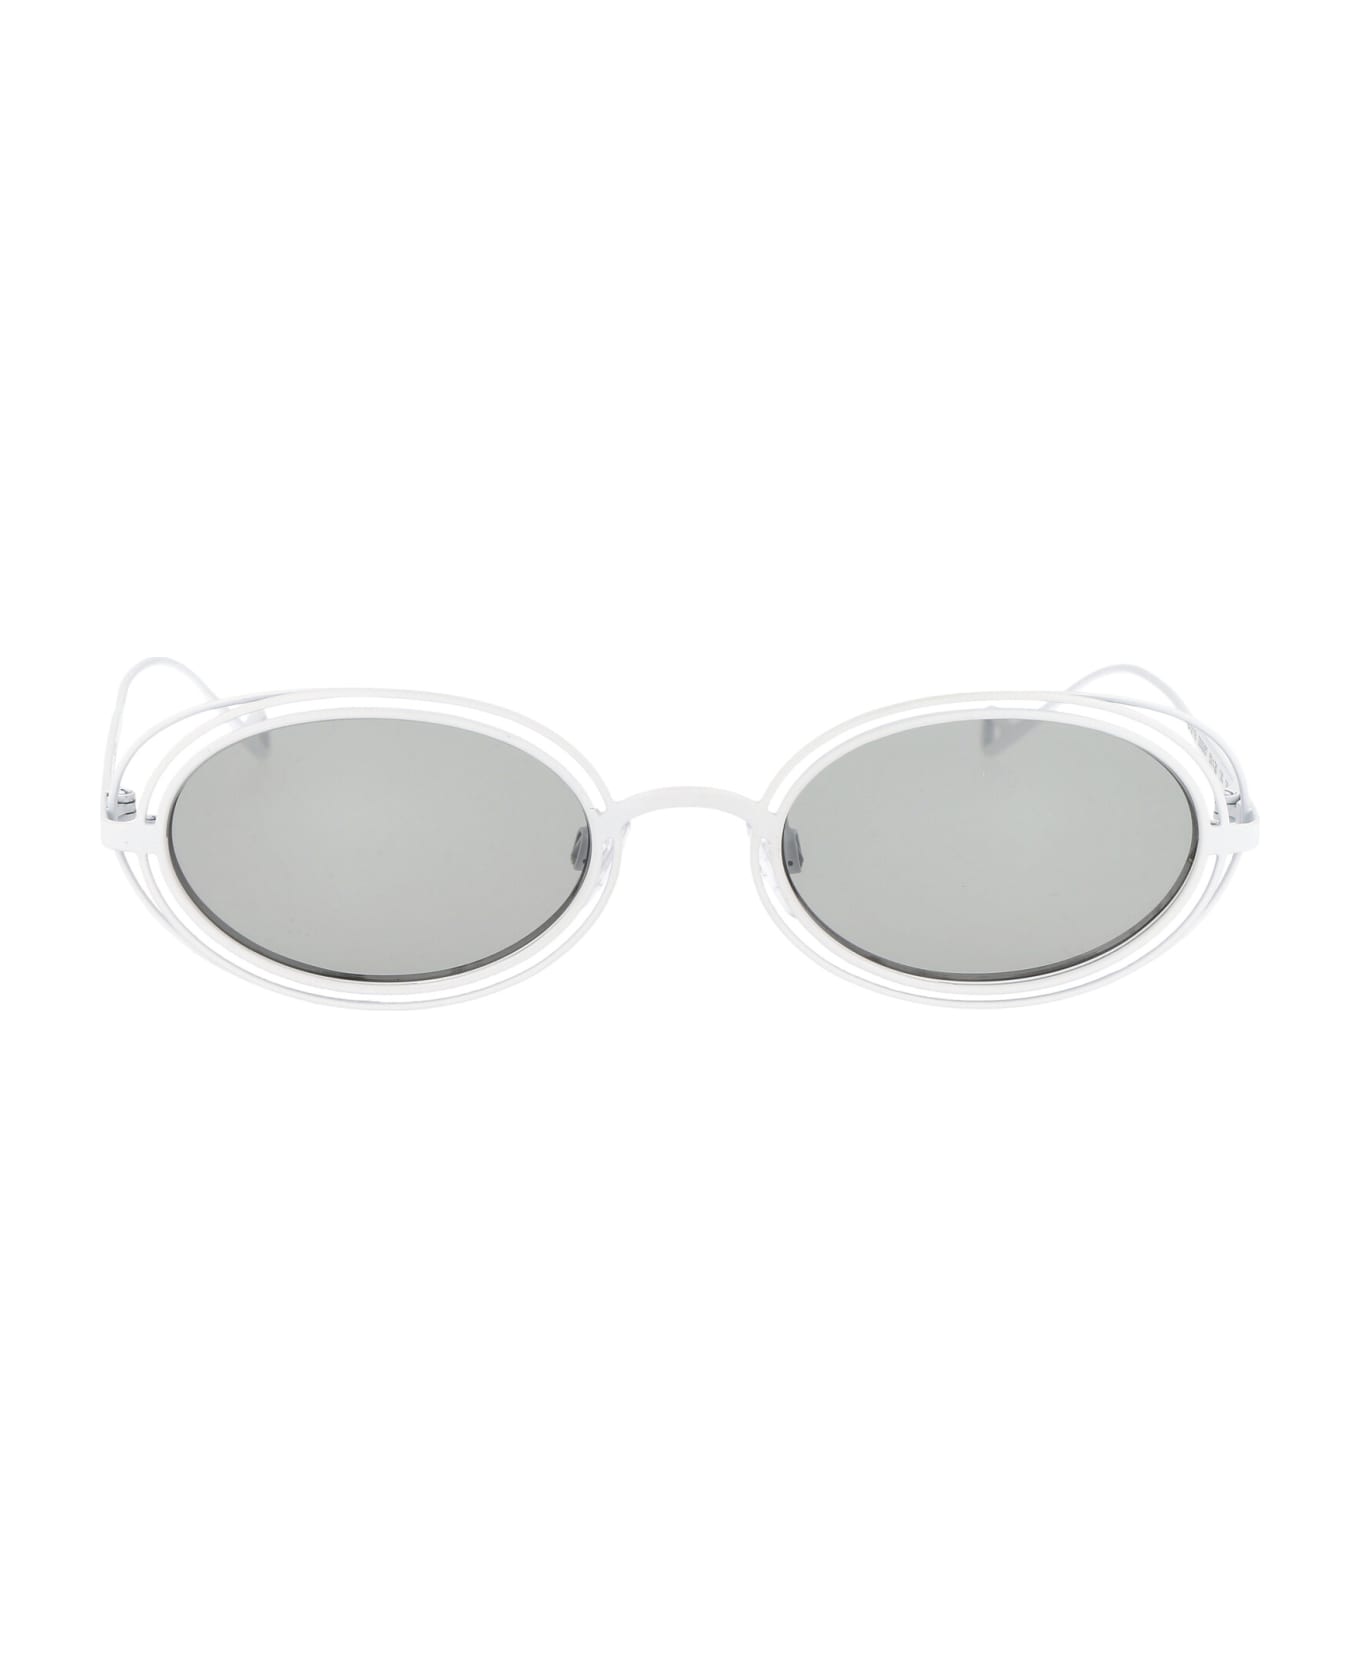 Emporio Armani 0ea2118 Sunglasses - 333387 MATTE WHITE